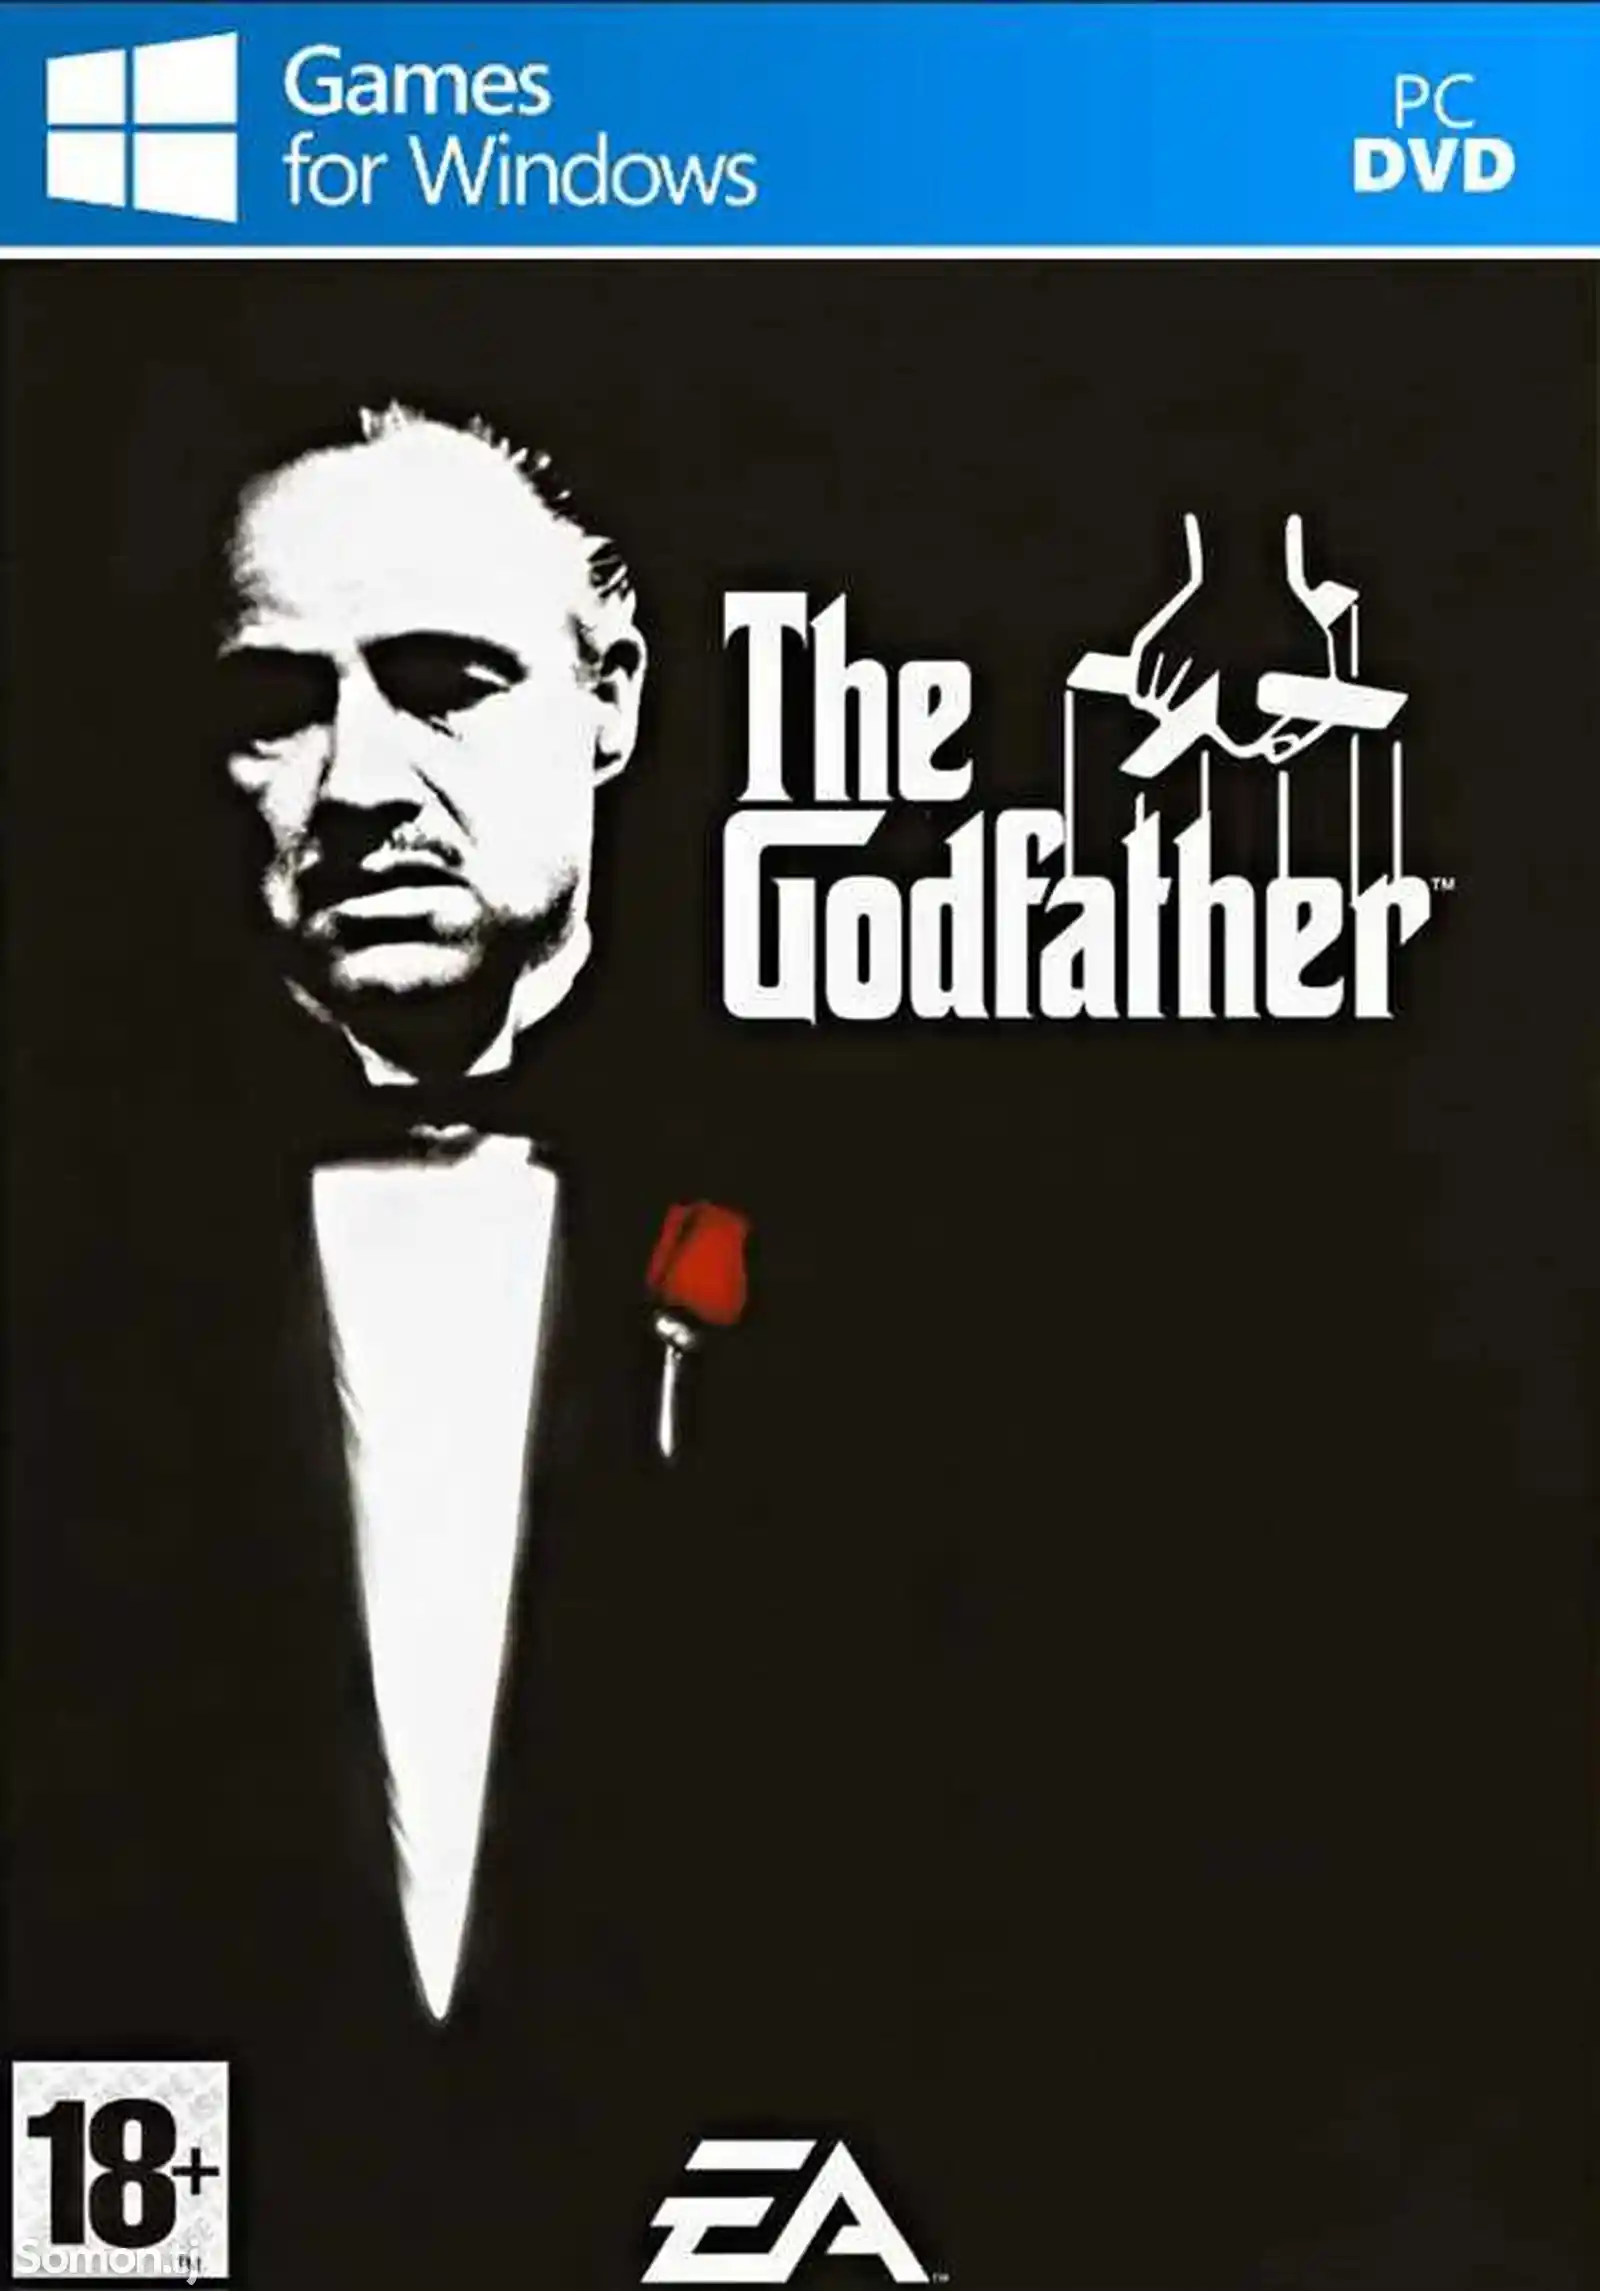 Игра The godfather 2 для компьютера-пк-pc-1